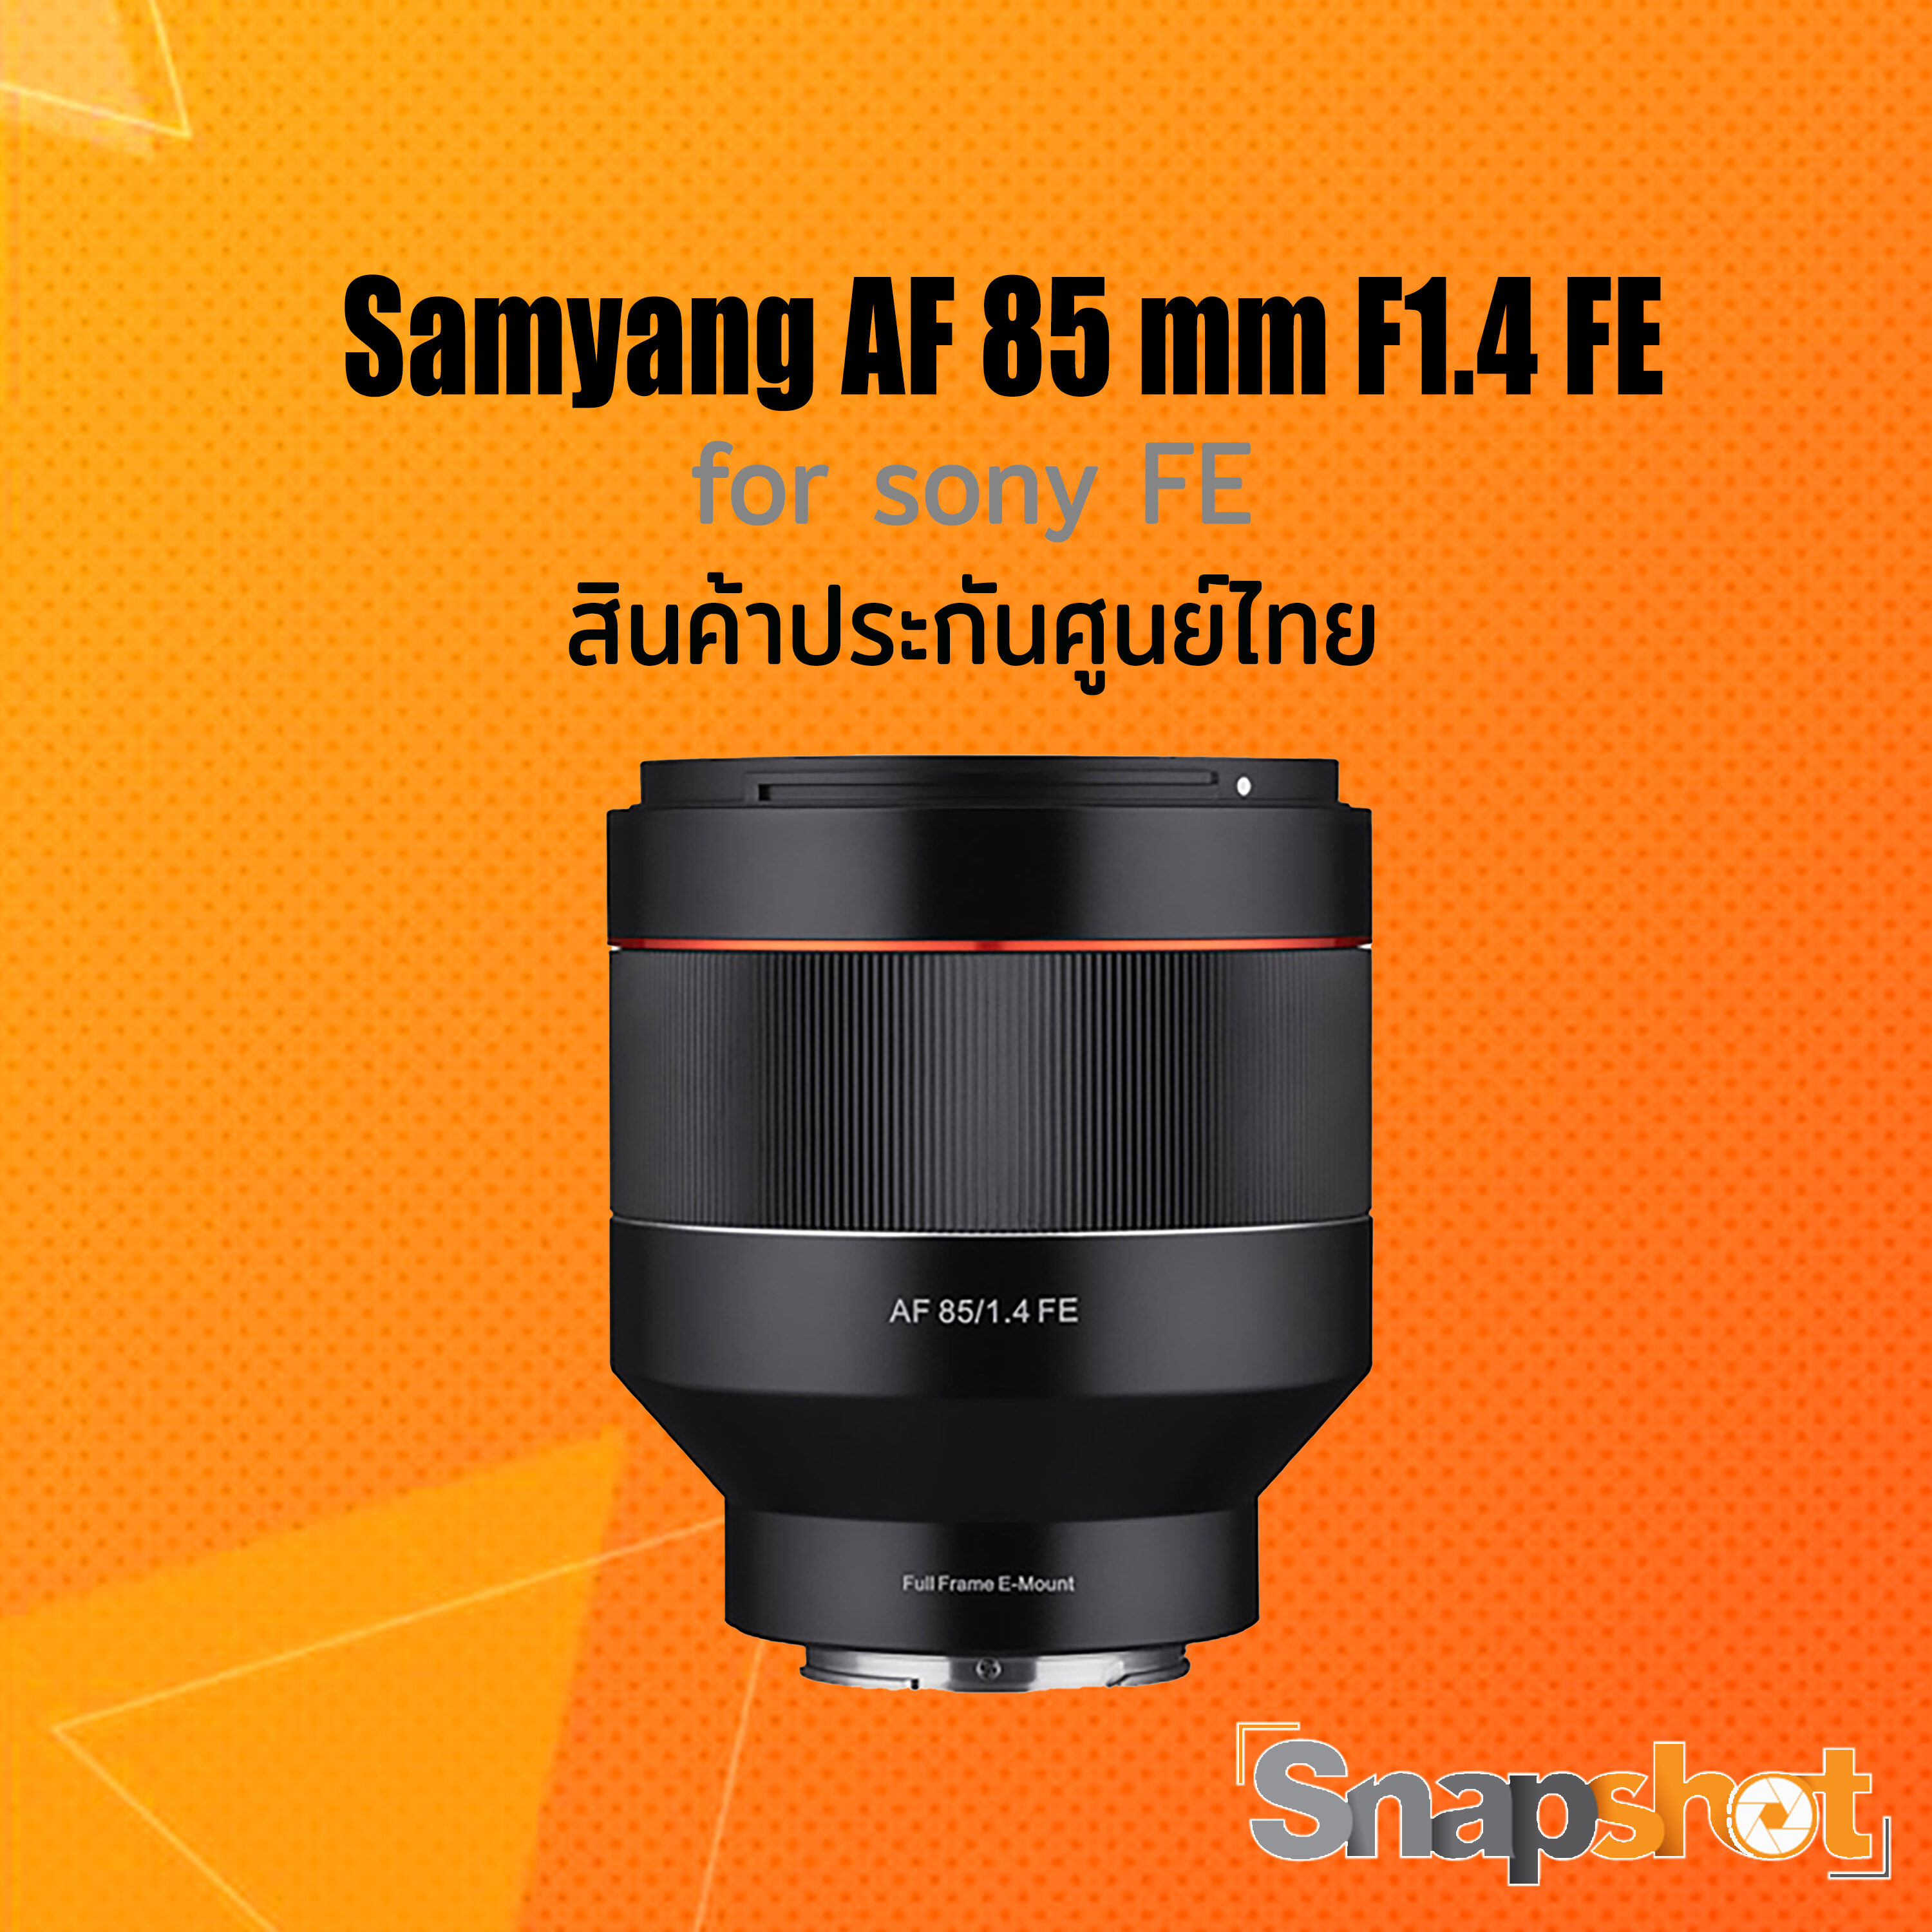 Samyang AF 85mm F1.4 ประกันศูนย์ไทย